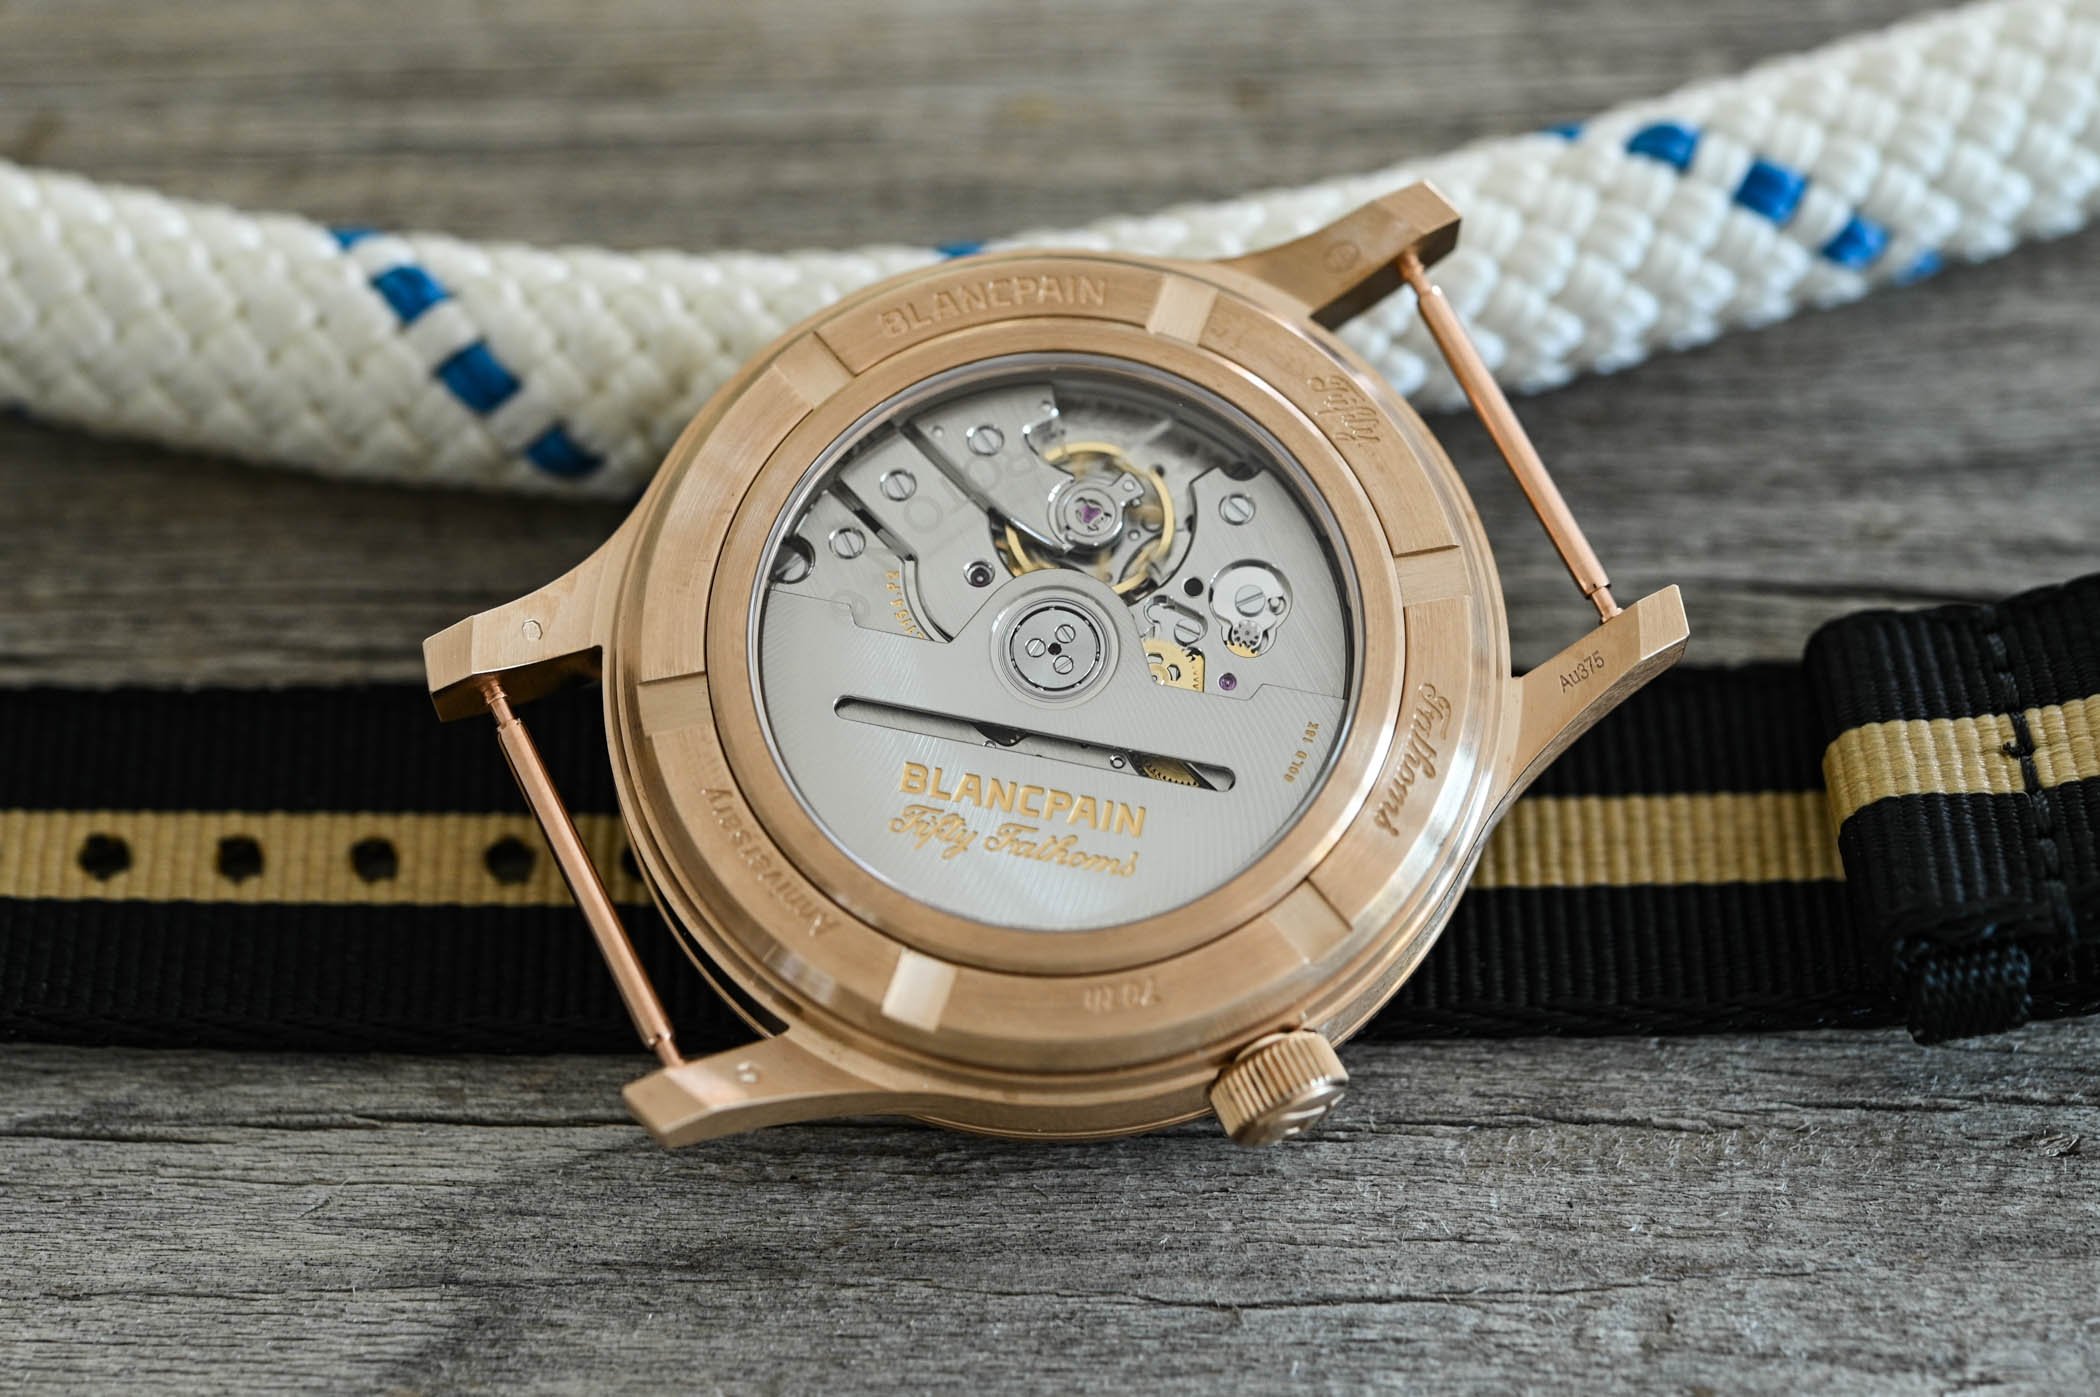 Откройте для себя потрясающие новые Blancpain Fifty Fathoms Act 3 MIL-SPEC Bronze-Gold: уникальные часы для дайвинга!